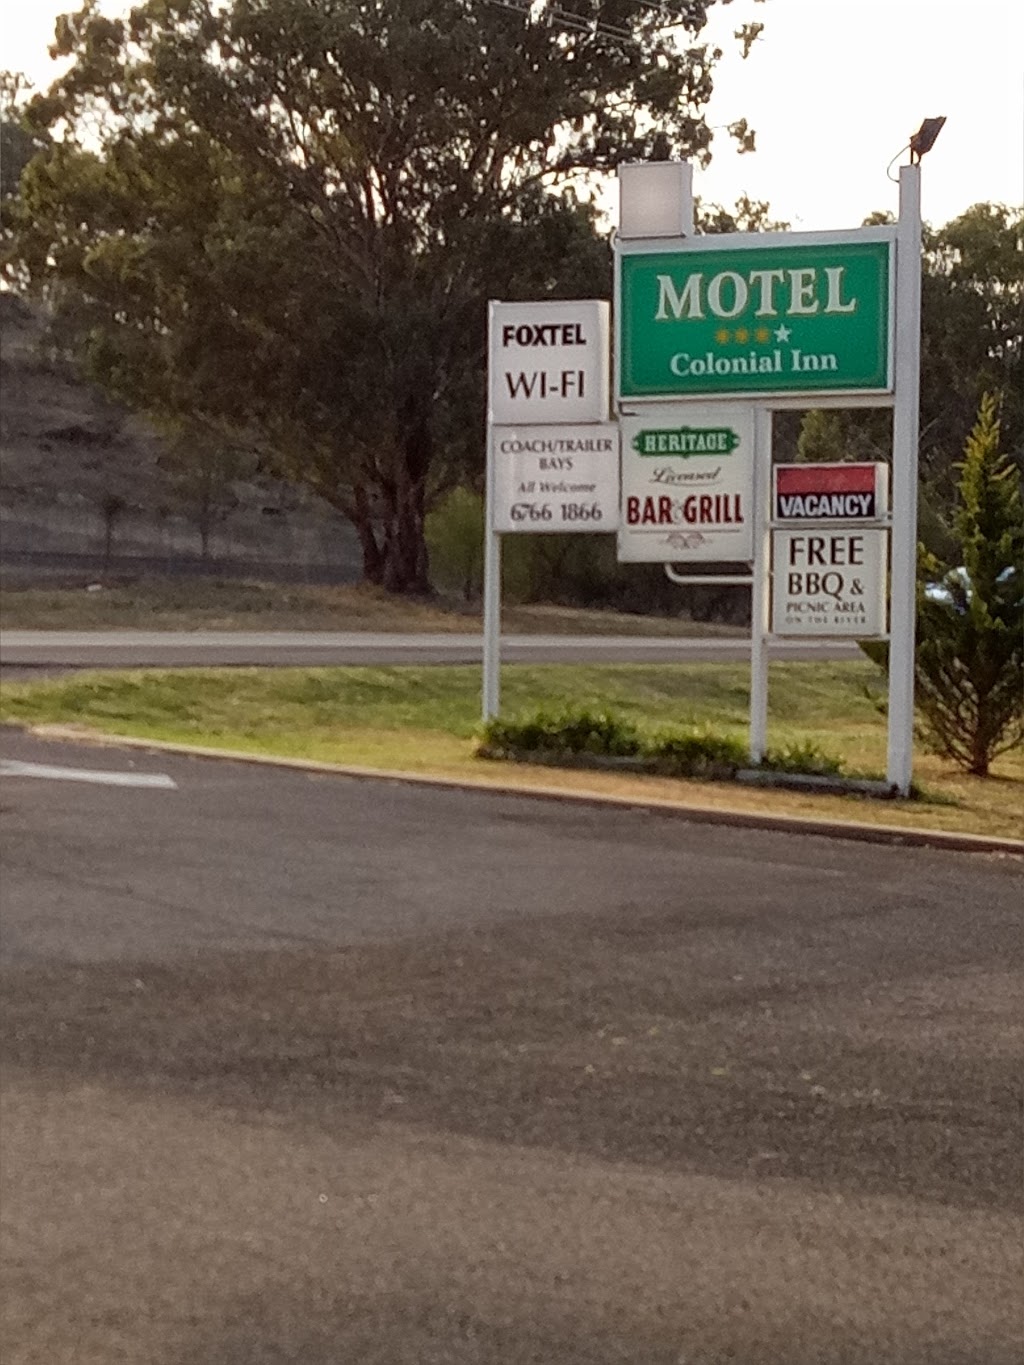 Colonial Inn Motel | lodging | 519 Armidale Rd, East Tamworth NSW 2340, Australia | 0267661866 OR +61 2 6766 1866